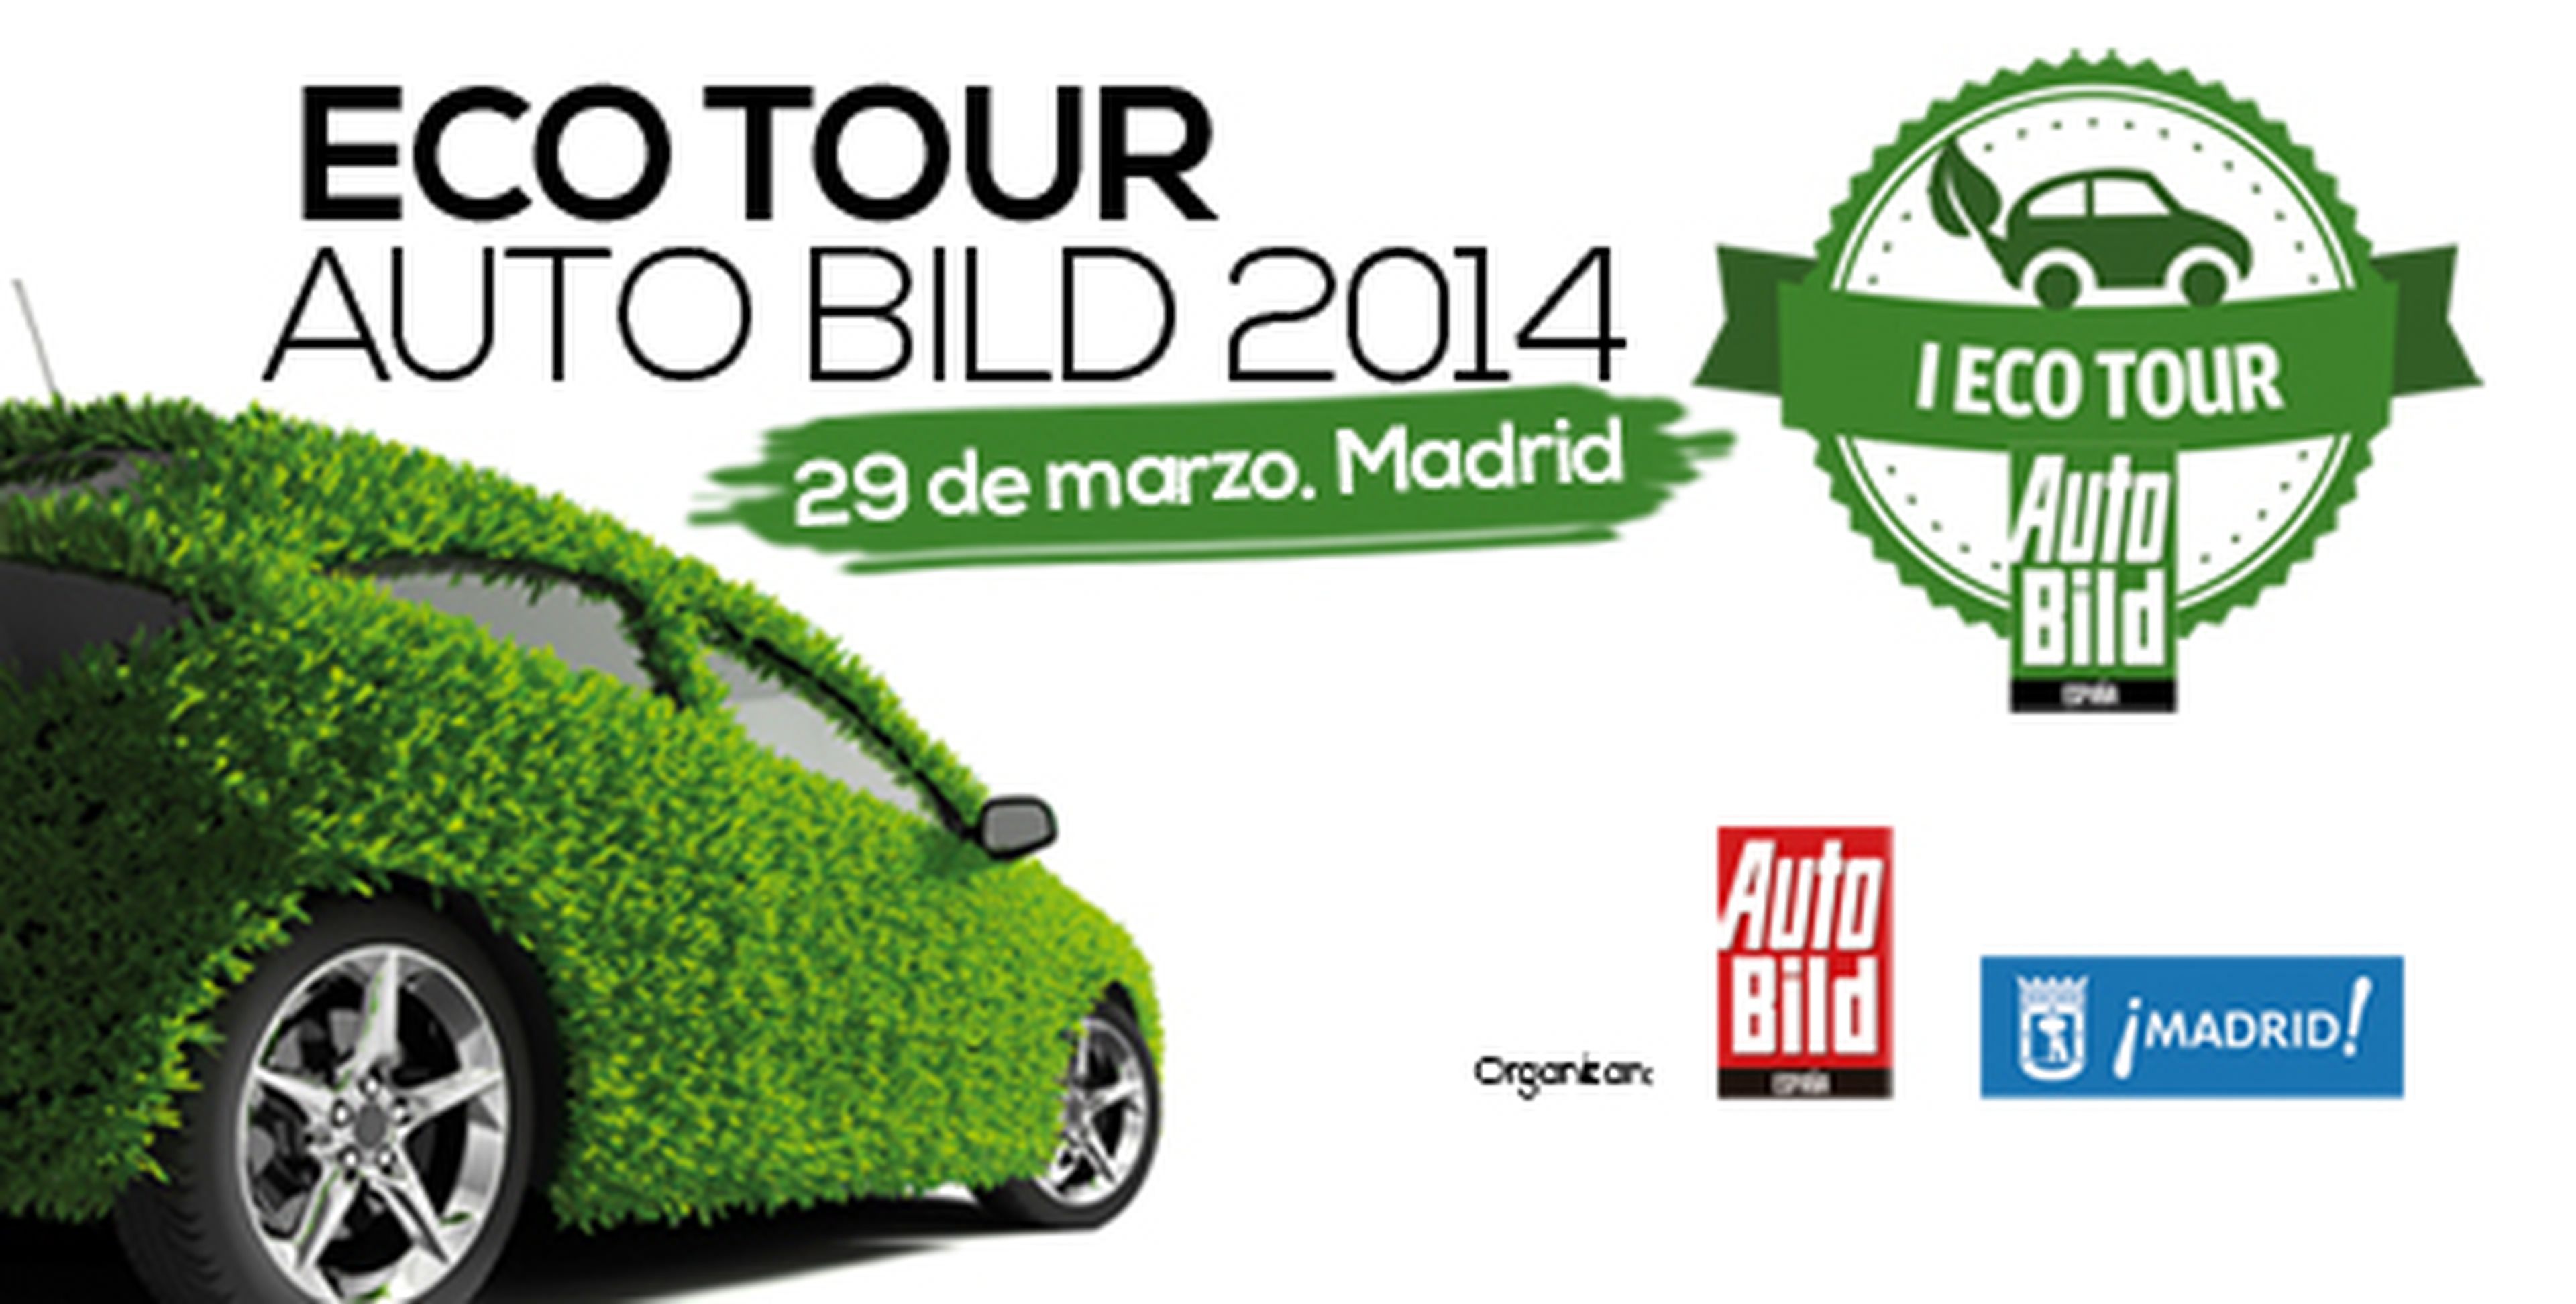 Eco Tour AUTO BILD 2014: horario de la jornada